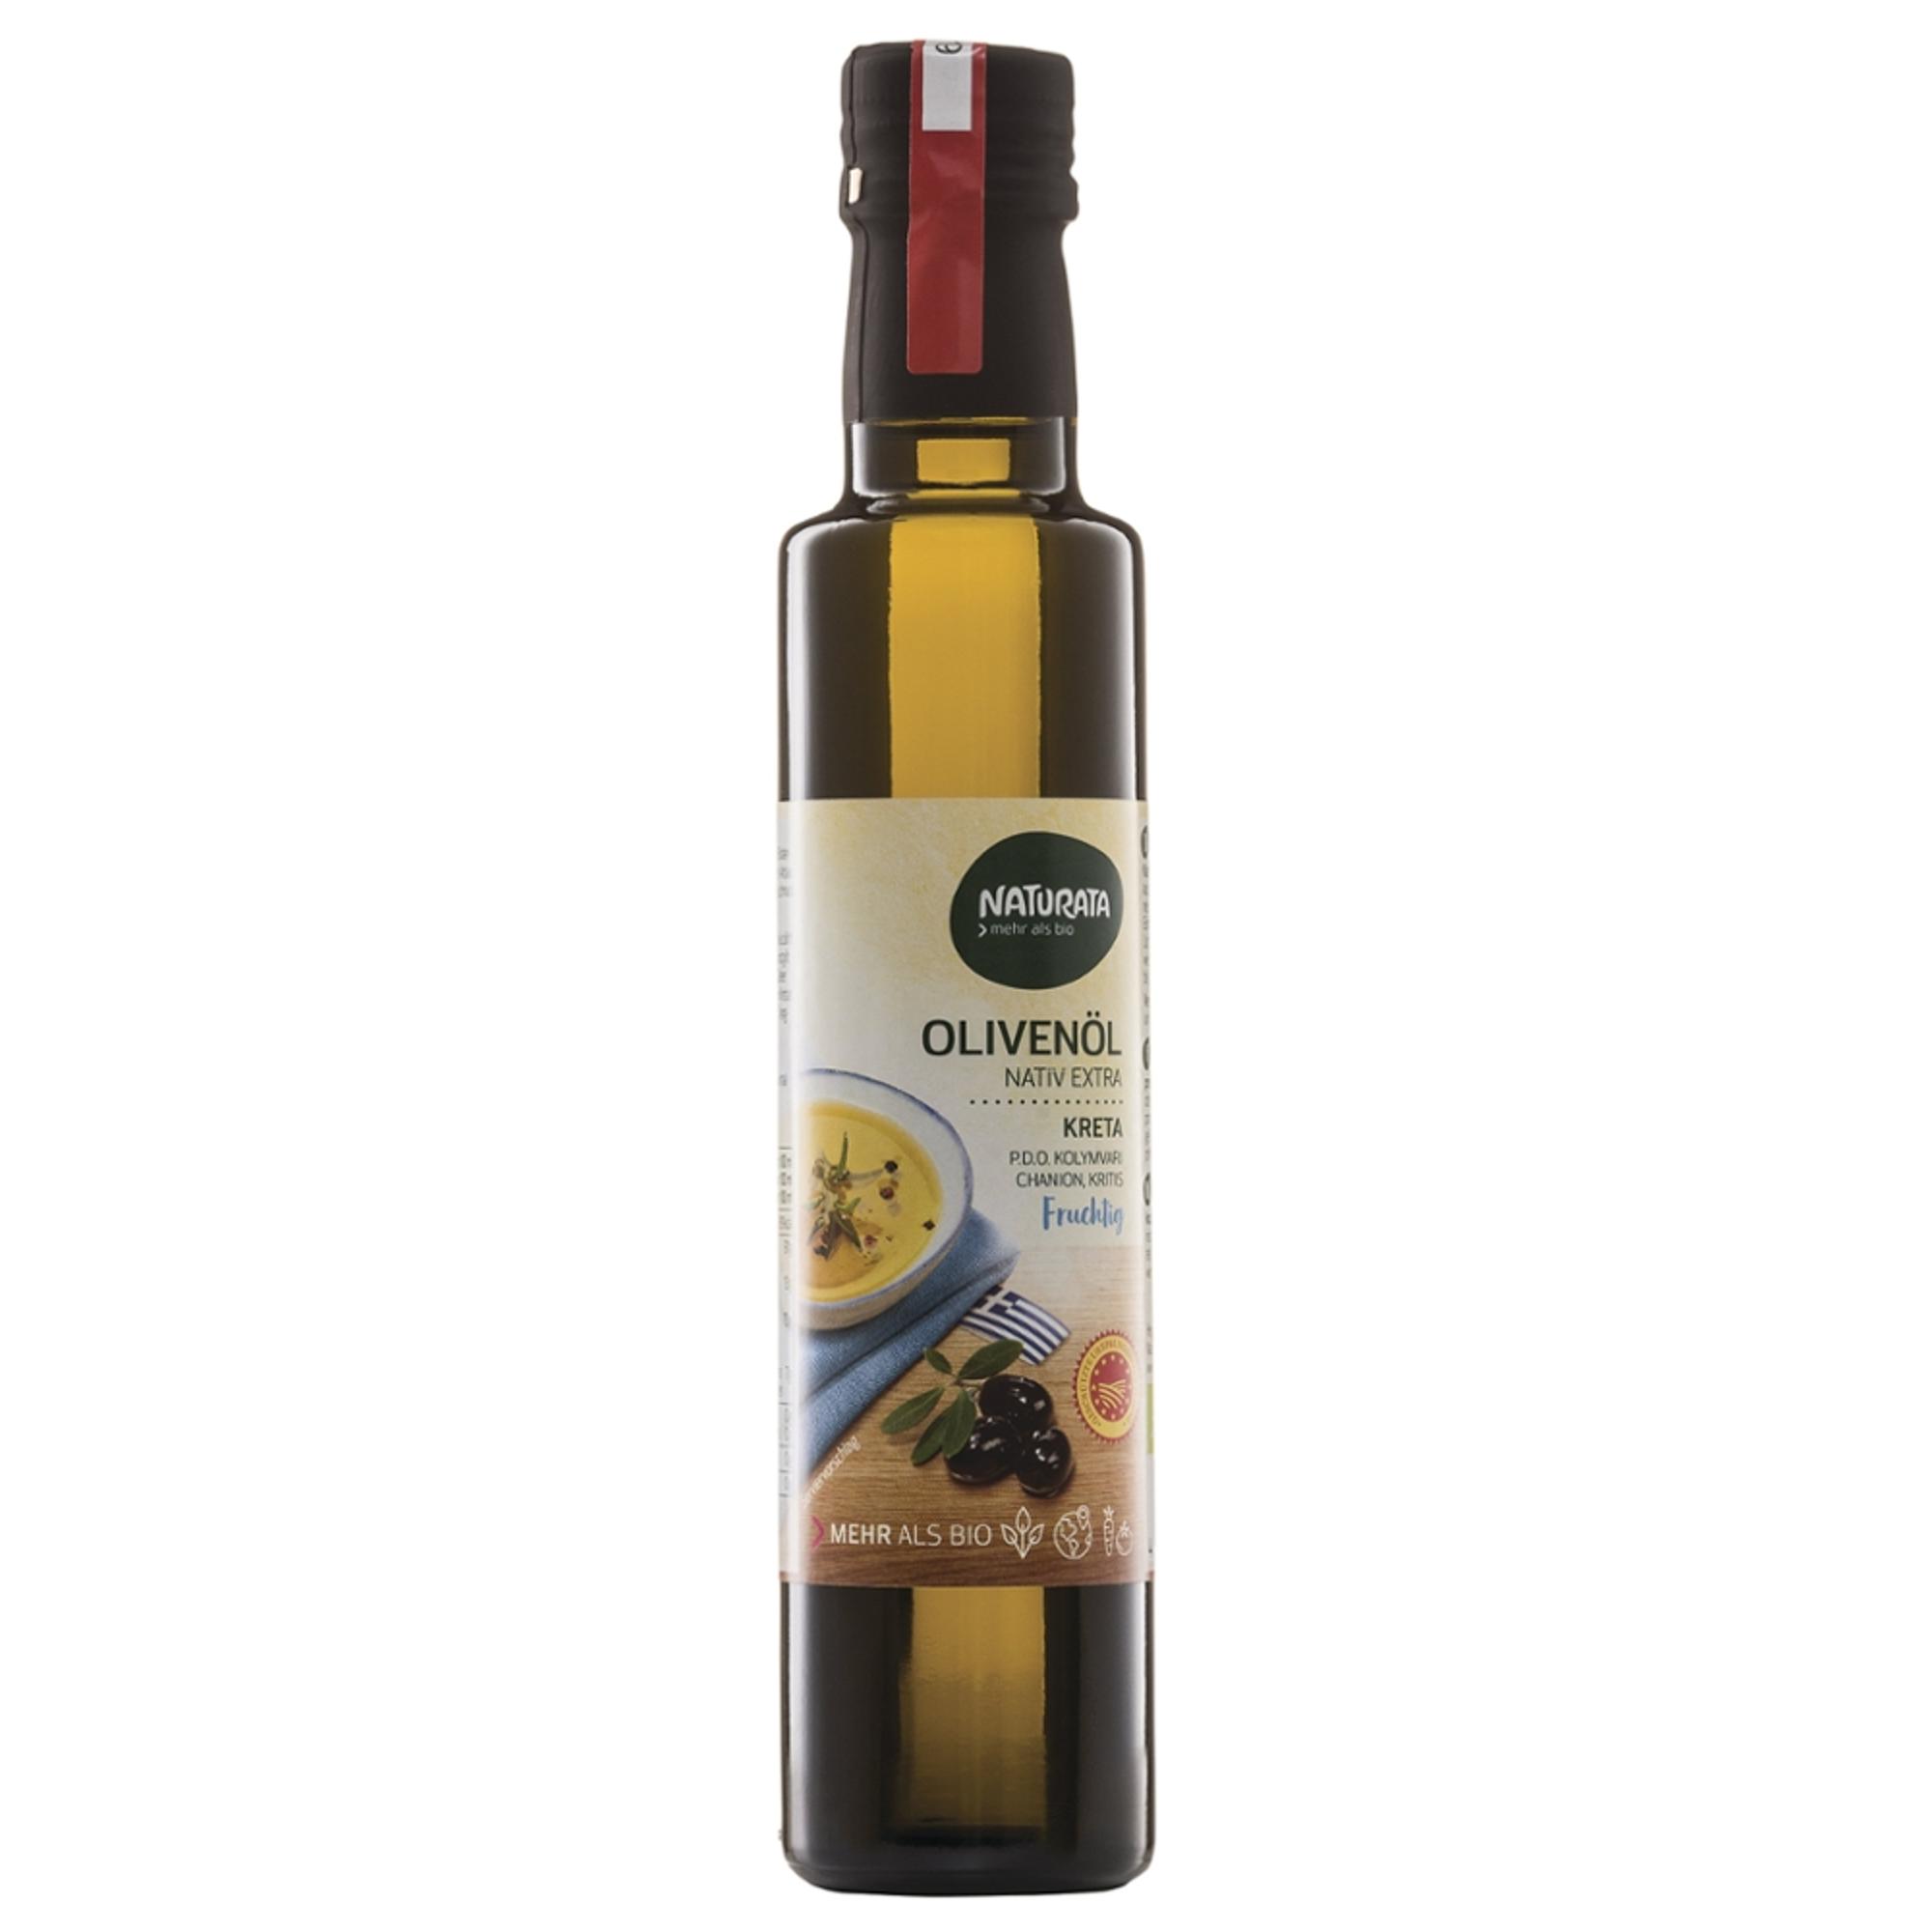 Olivenöl nativ extra, aus Kreta von Naturata.